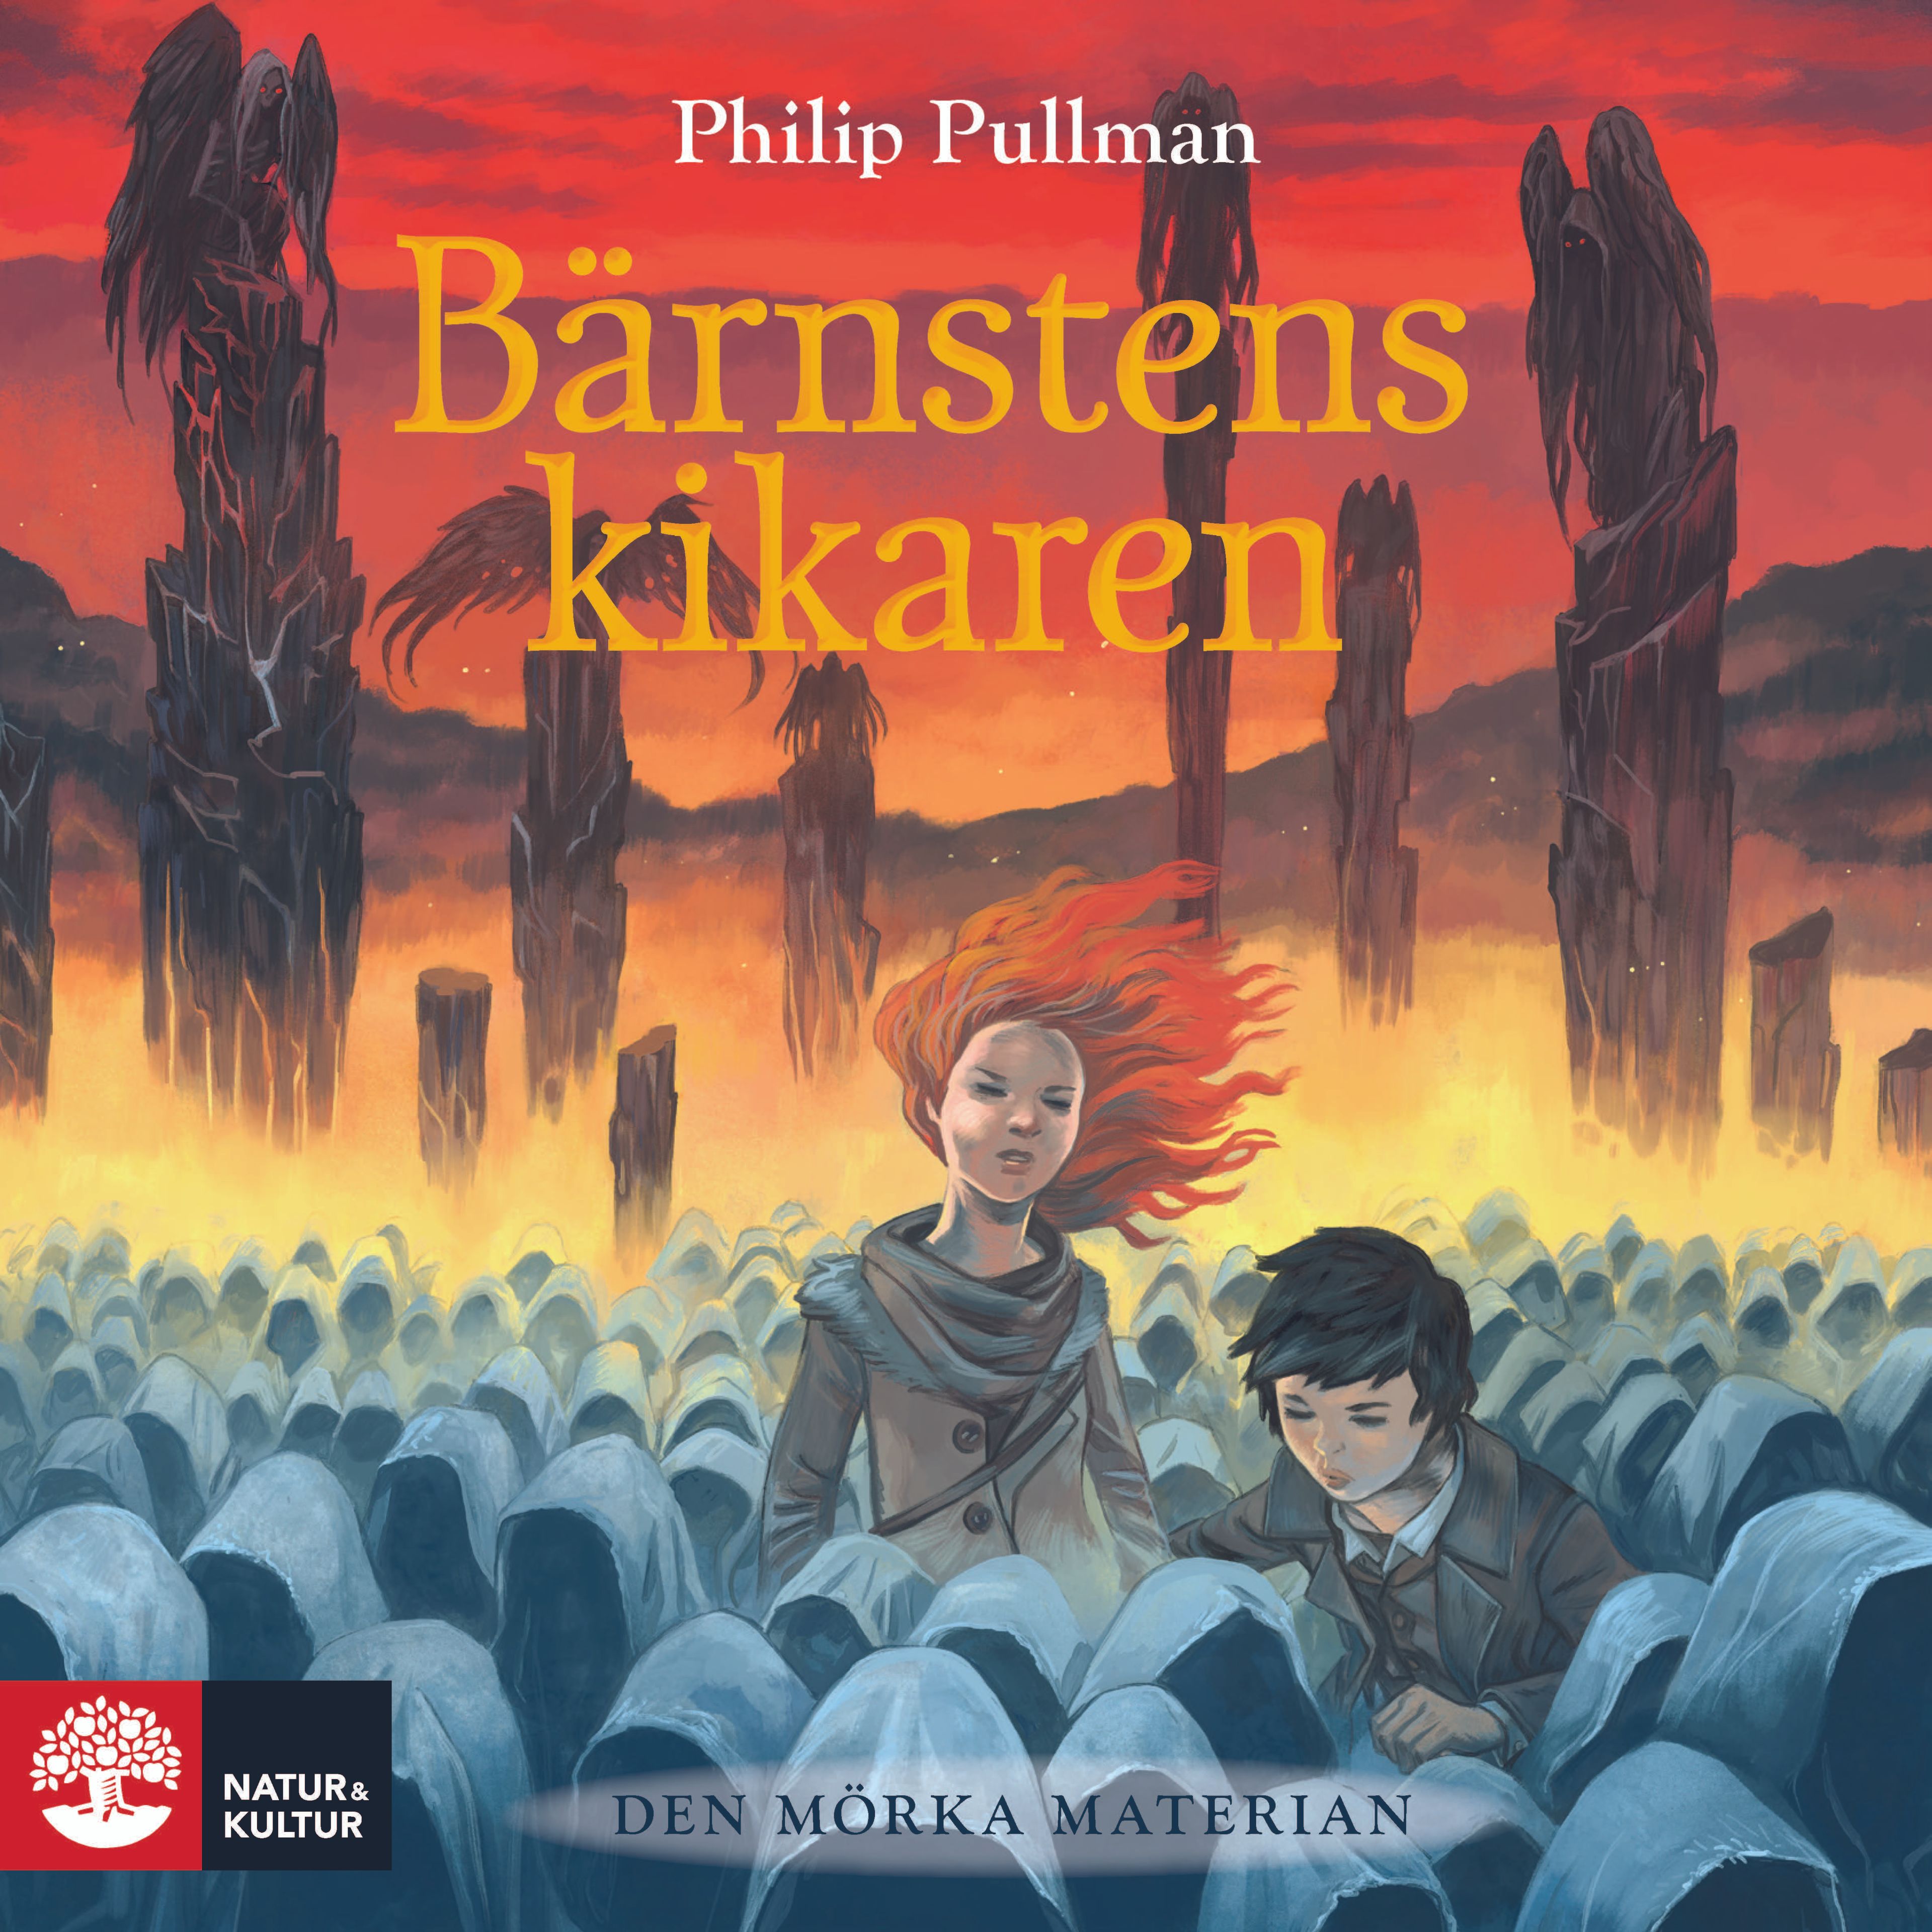 Bärnstenskikaren, ljudbok av Philip Pullman